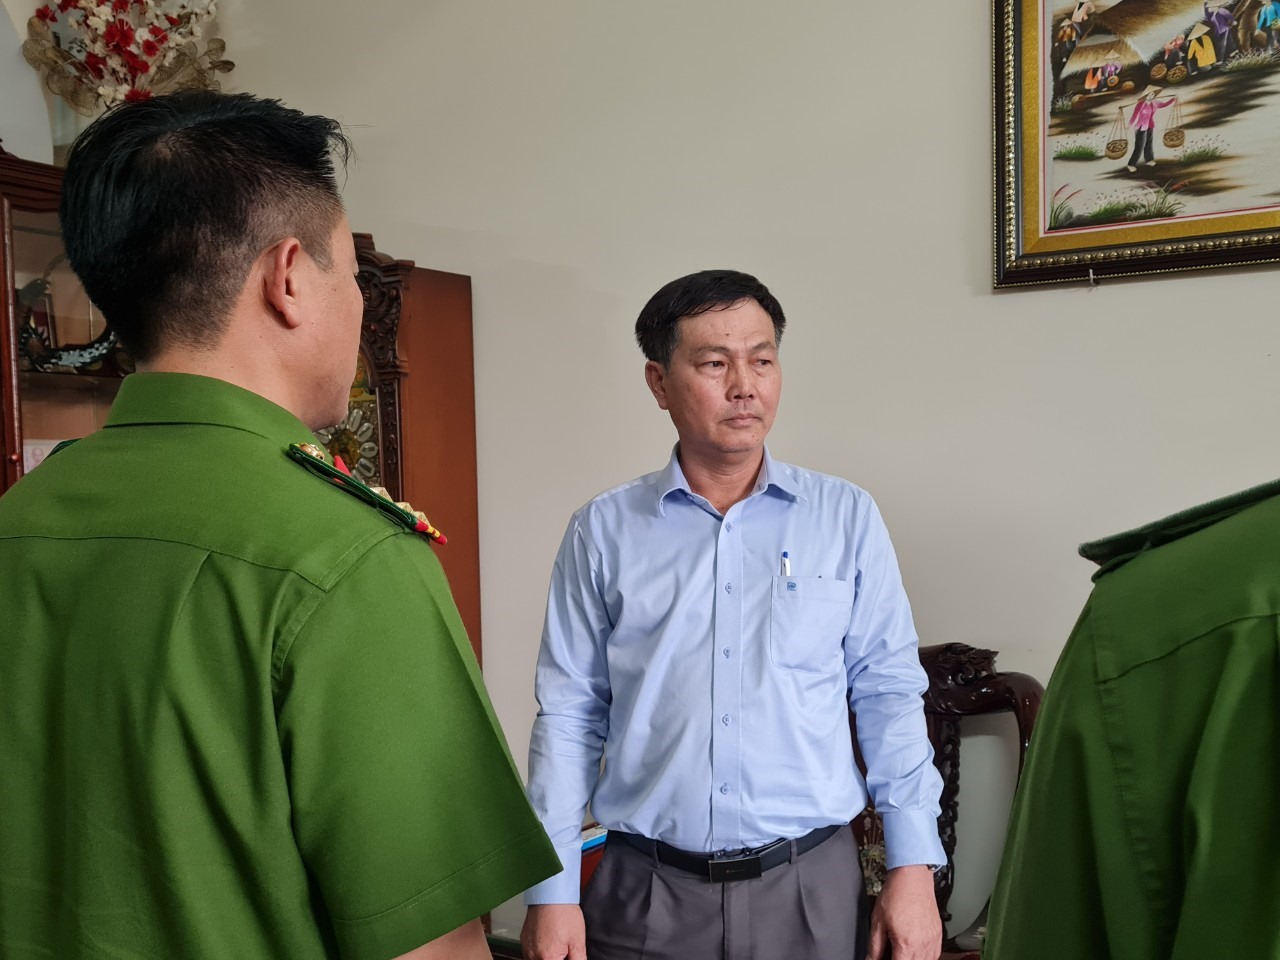 Cơ quan điều tra thi hành Lệnh bắt bị can để tạm giam đối với Nguyễn Văn Hồng. Ảnh: CA ĐN